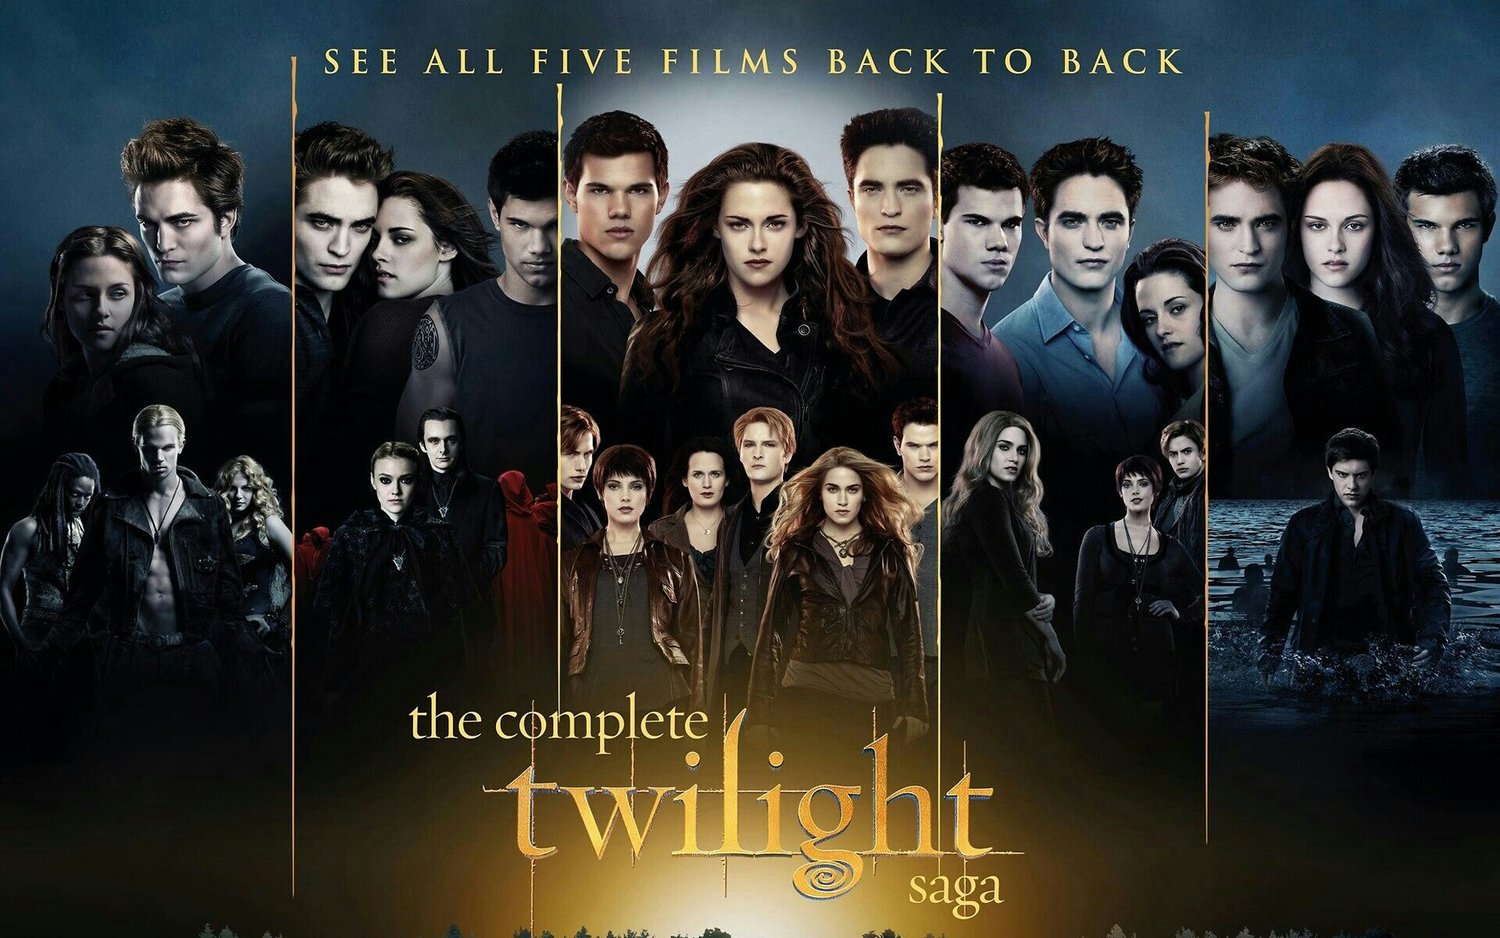 The-Complete-Twilight-Saga-Wallpapers-De